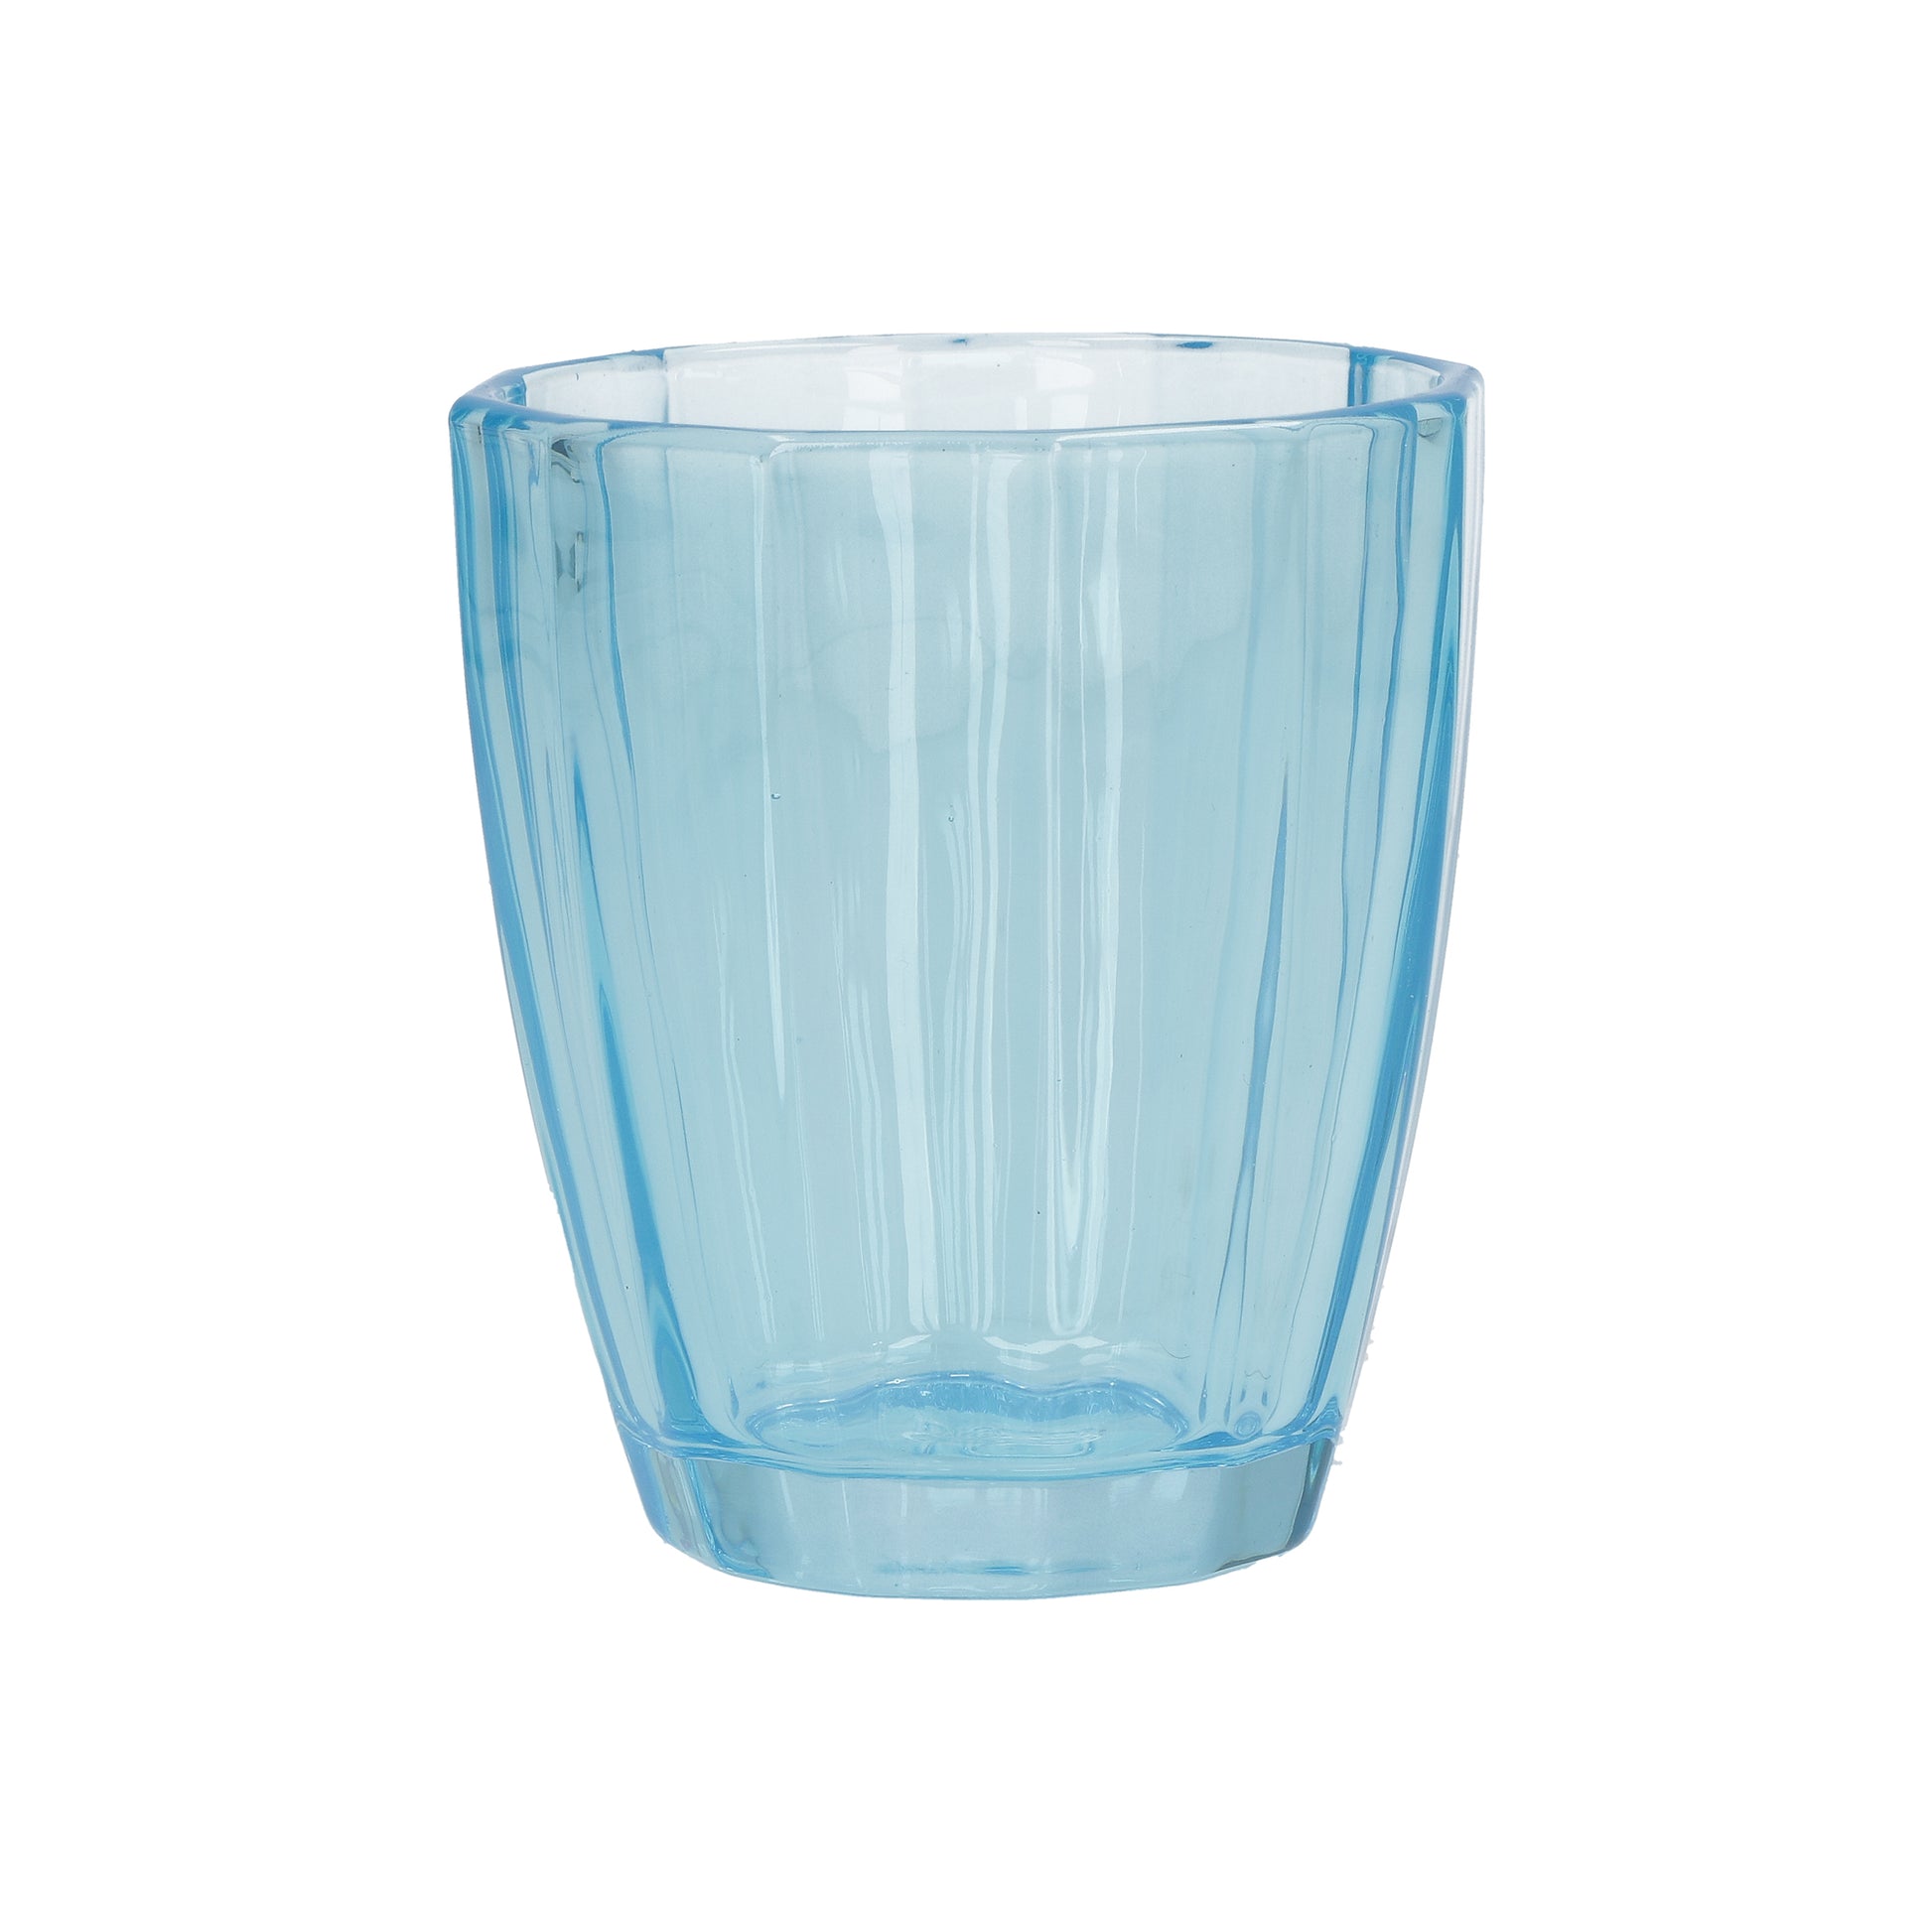 Confezione 6 bicchieri in vetro turchese cc 320 - Ø 8,5 - h 10 cm. Lavabili in lavastoviglie. In negozio e online su tuttochic.it